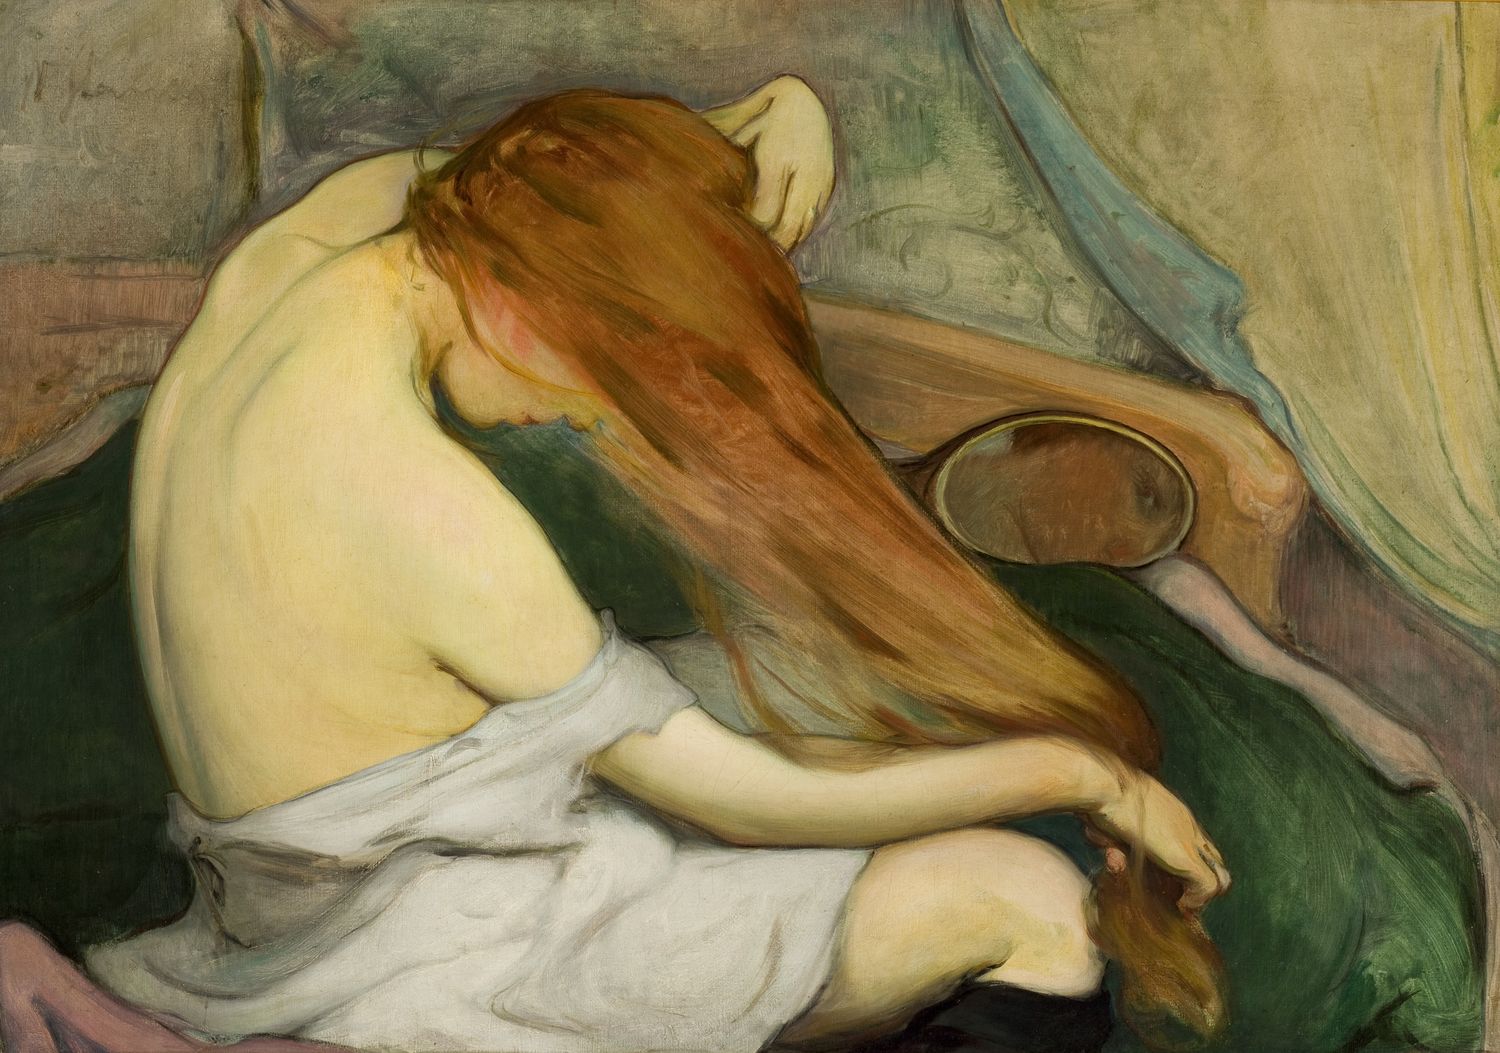 Frau, die ihr Haar kämmt by Wladyslaw Slewinski - 1897 - 64 x 91 cm Nationalmuseum Krakau